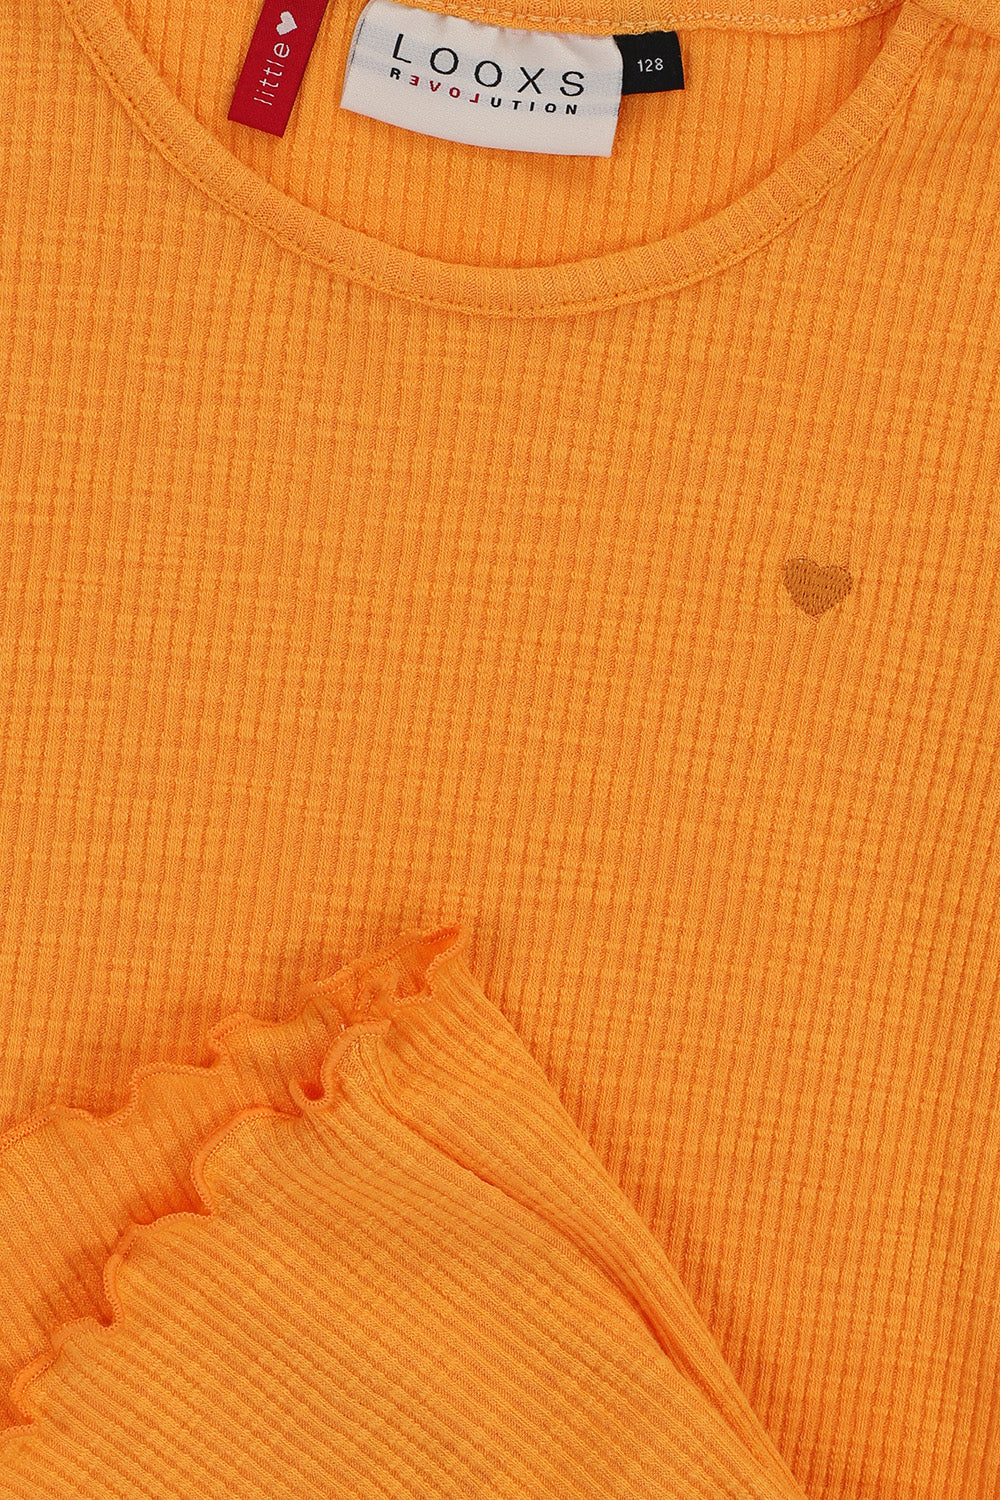 Meisjes Slubrib T-Shirt van LOOXS Little in de kleur Orange in maat 128.